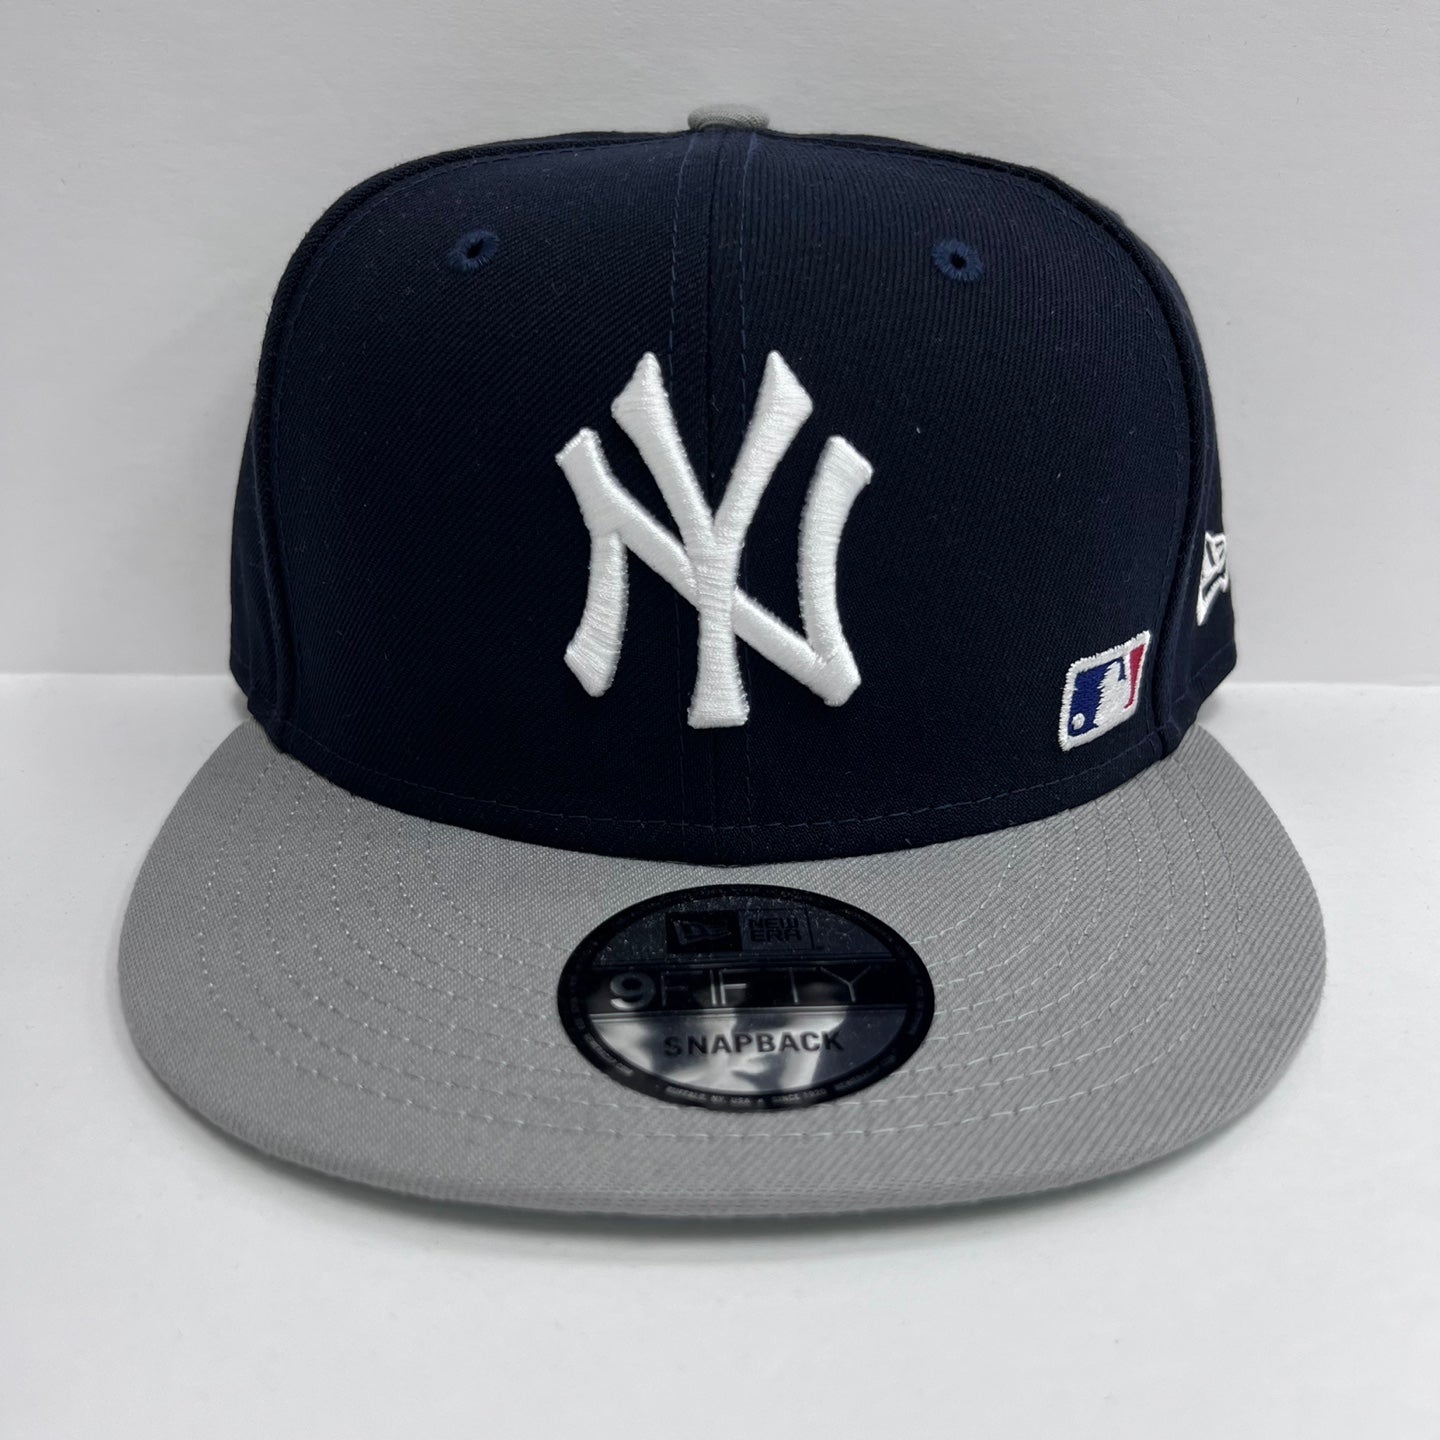 New Era MLB 9FIFTY NY Yankees Snapback Hat